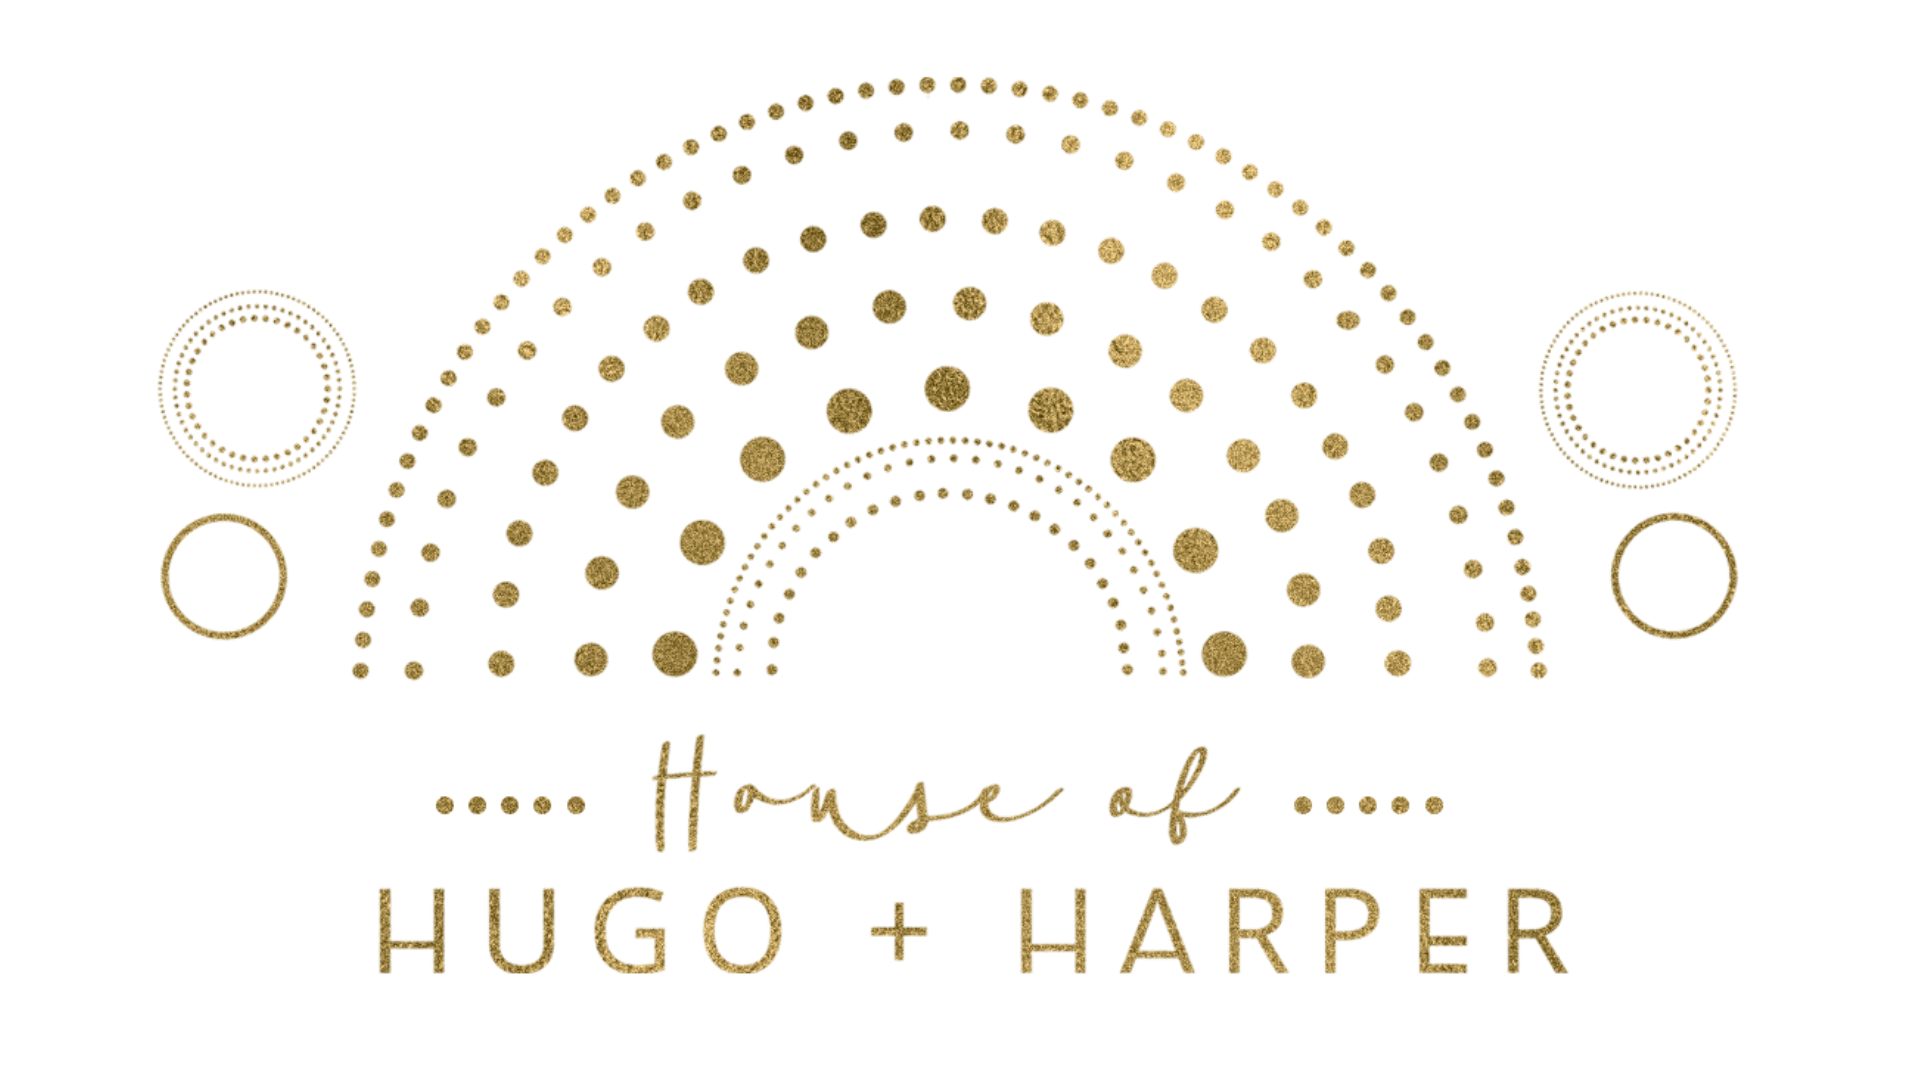 House of Hugo + Harper